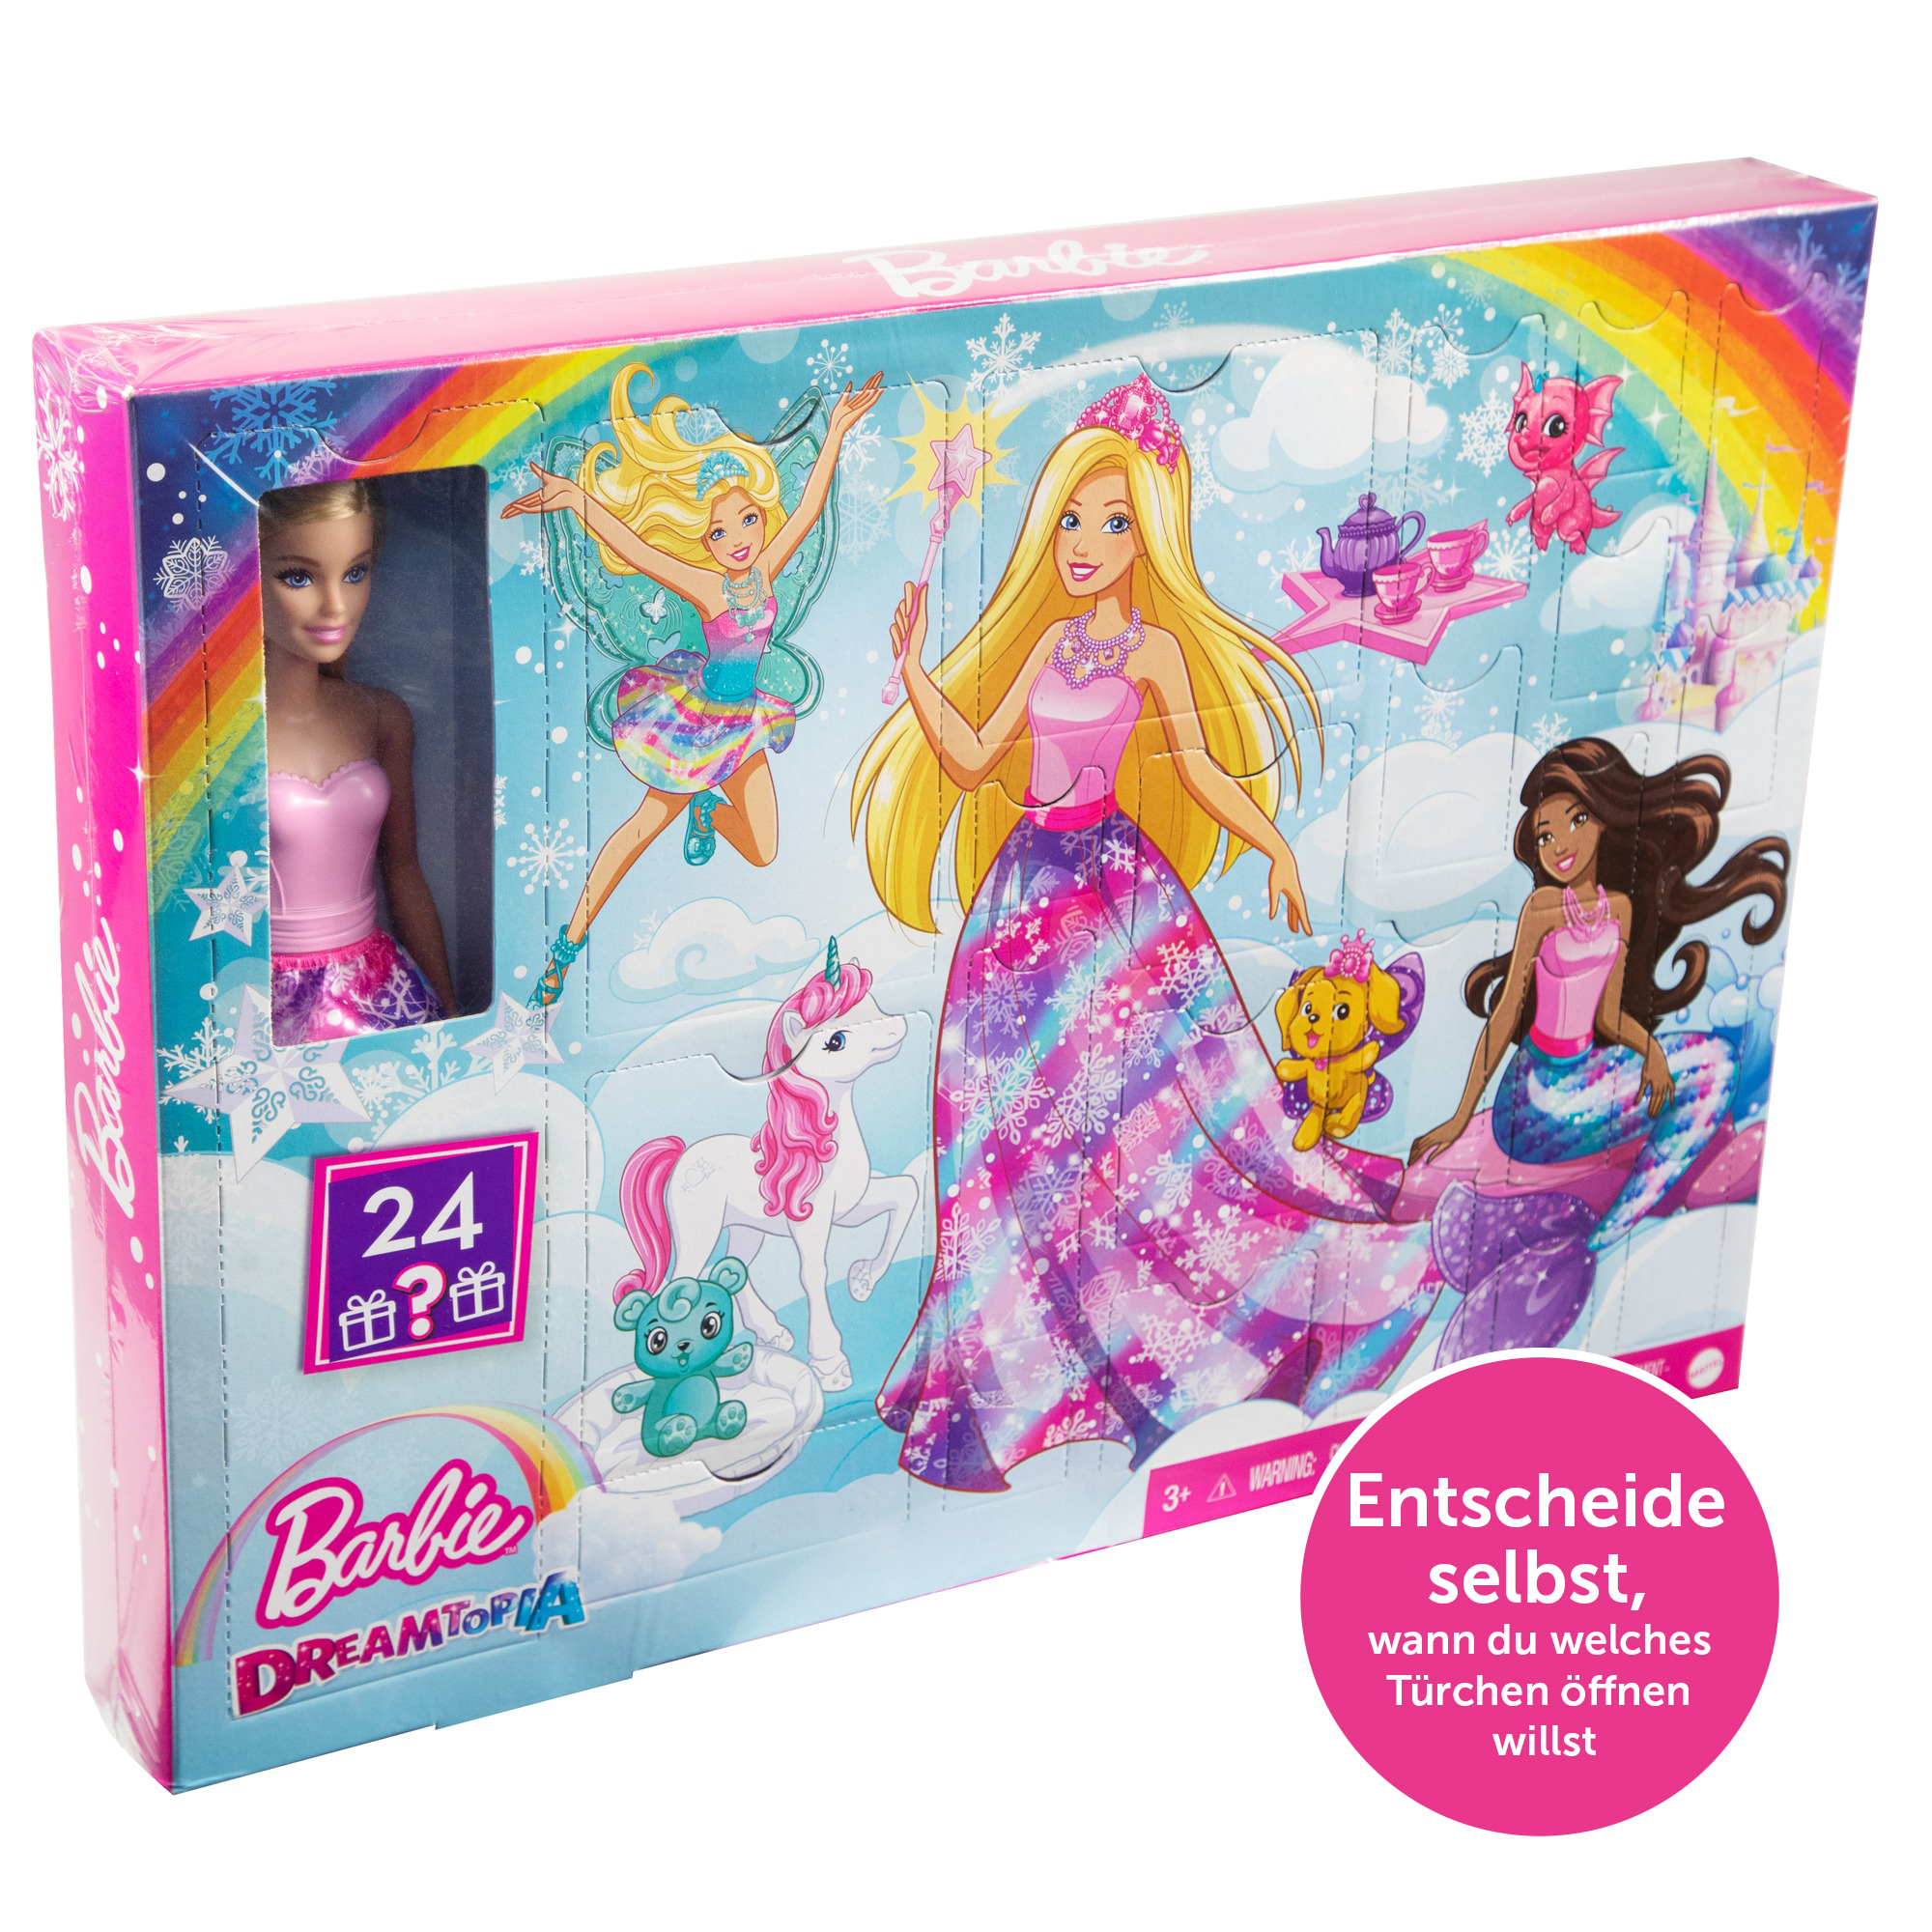 MATTEL GAMES ohne Barbie-Puppe frei Nummerierung 24 Türchen HGM66 Dreamtopia Überraschungen, Adventskalender wählbare Märchen und mit Mehrfarbig Barbie